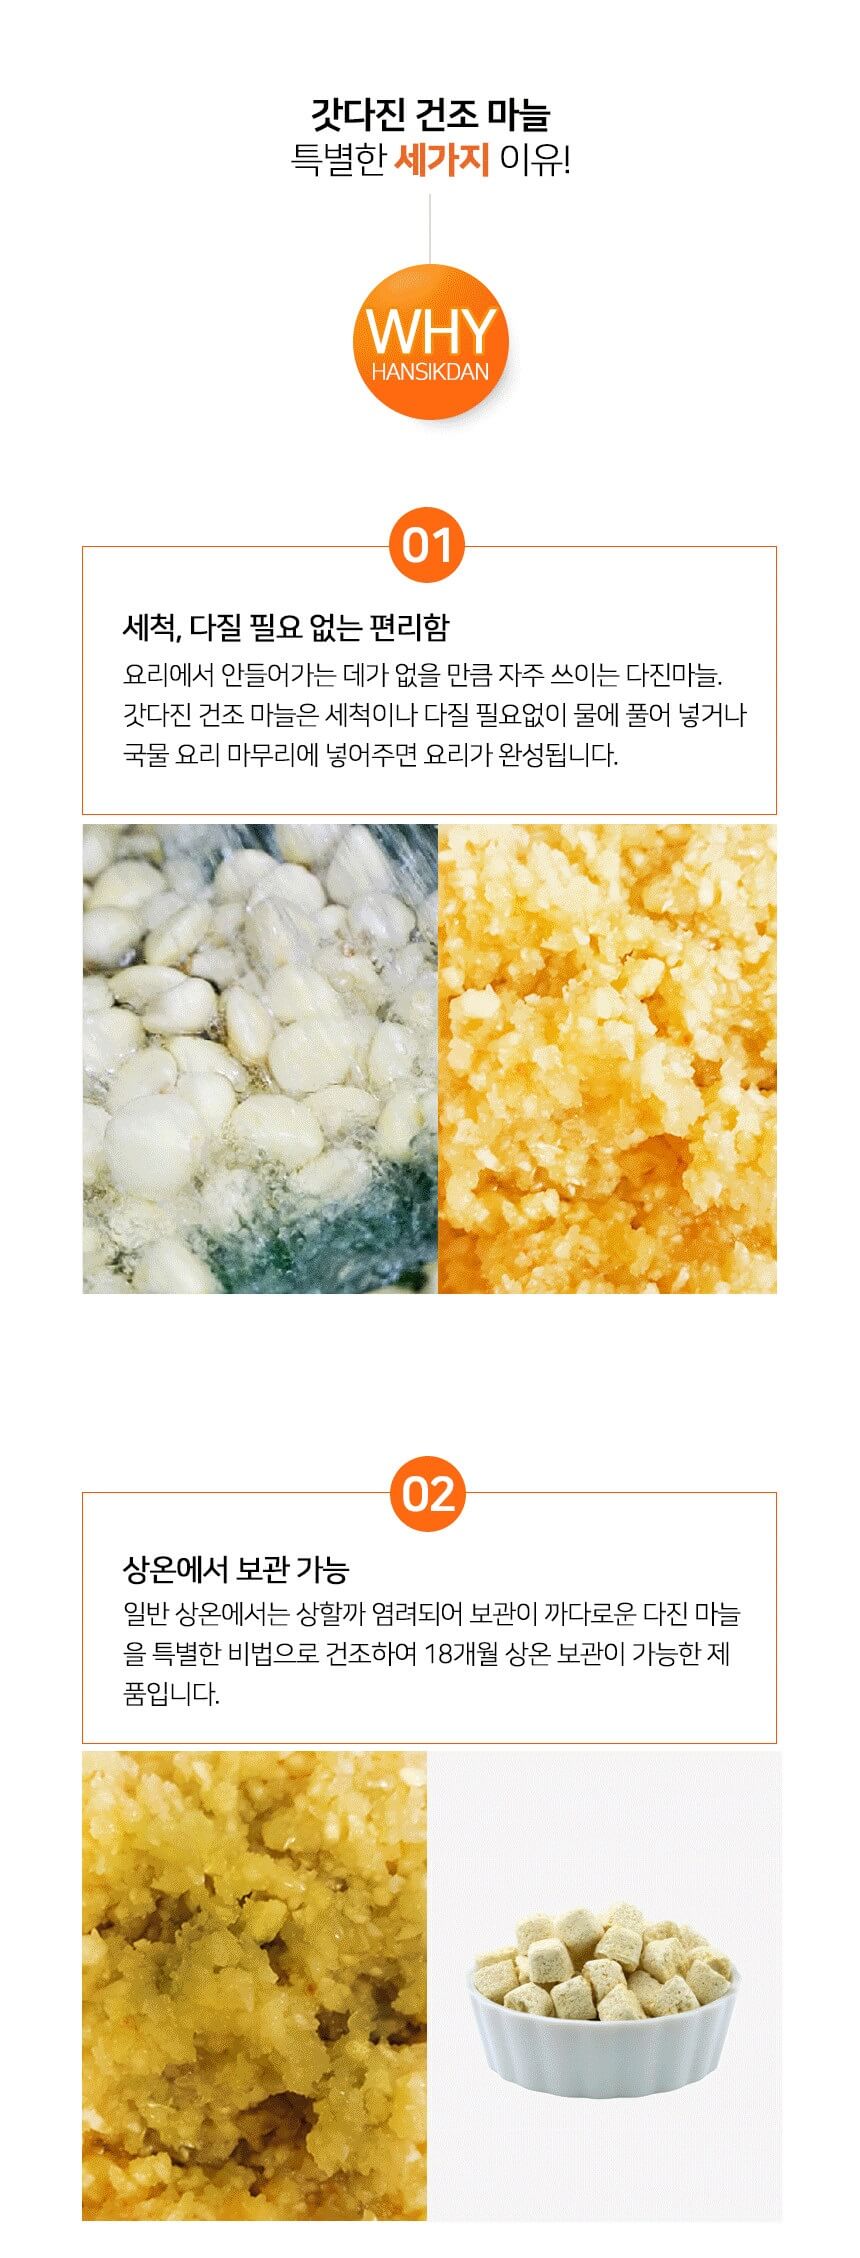 韓國食品-[Fnd] 갓다진 건조마늘 30g